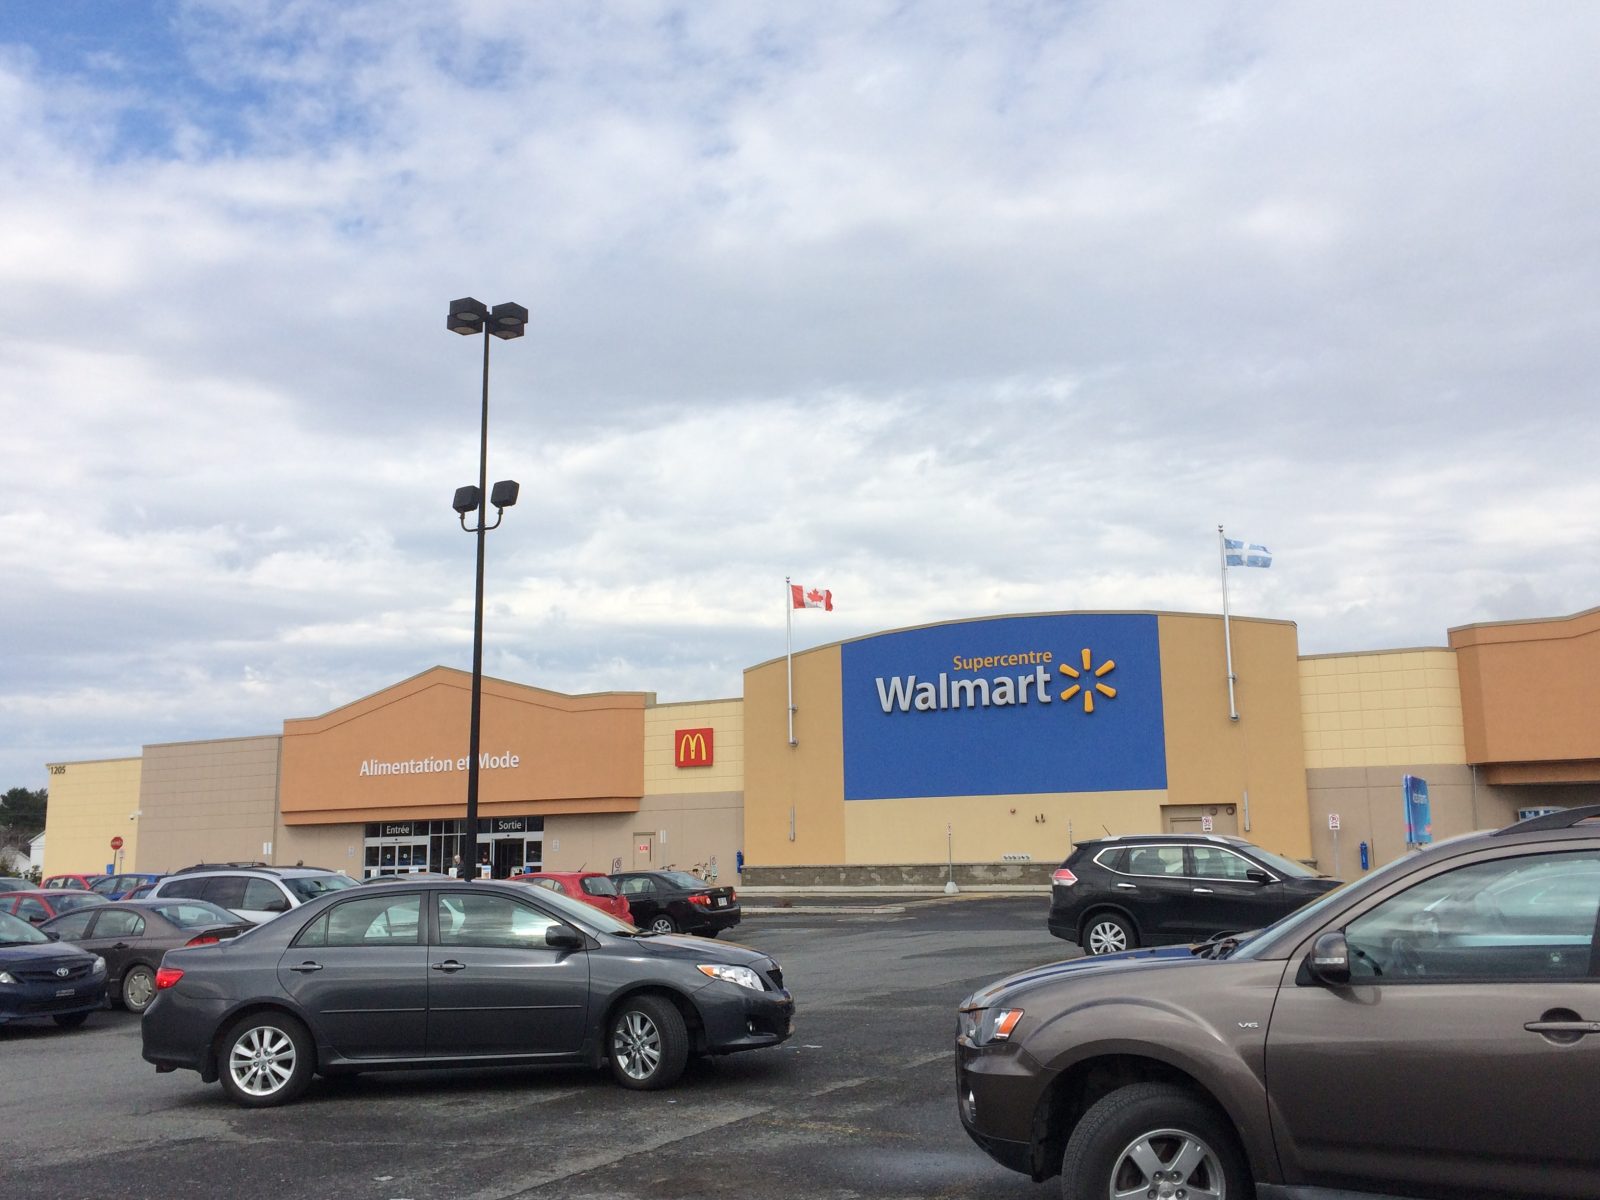 Walmart et Costco : retour sur la venue de deux géants